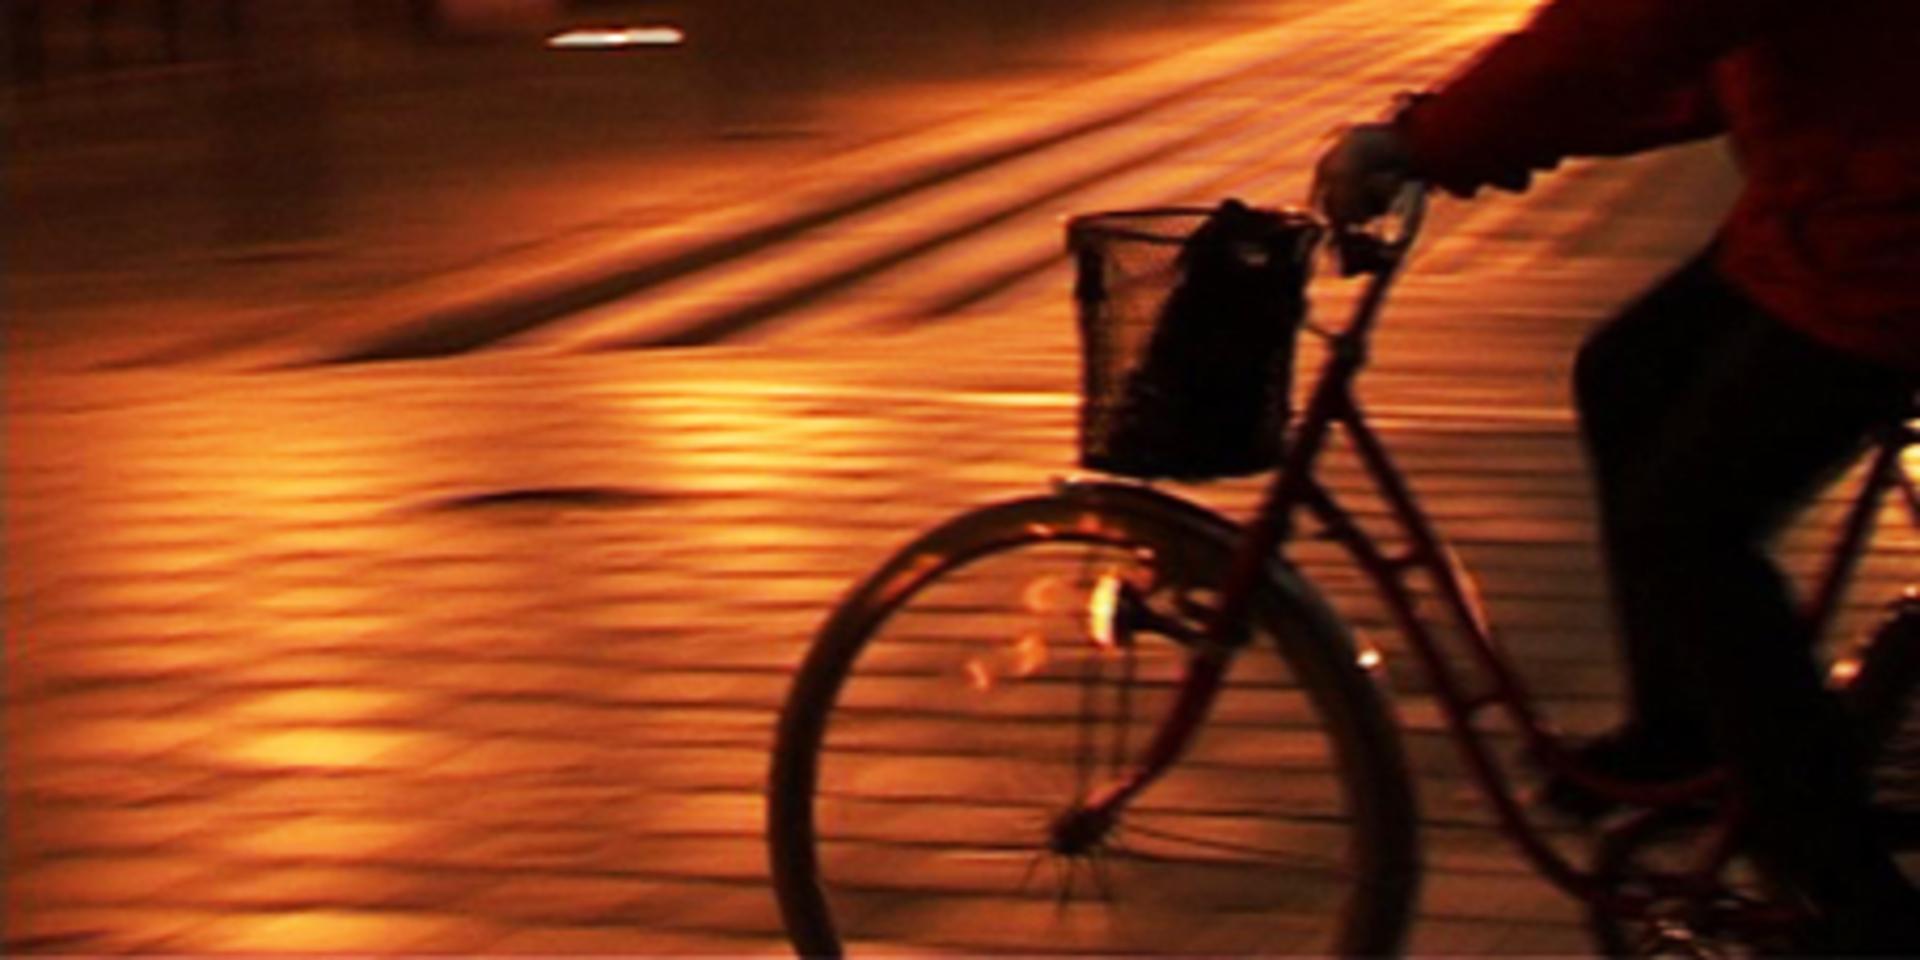 Det måste kännas tryggt att cykla även när det är mörkt ute, menar skribenten.